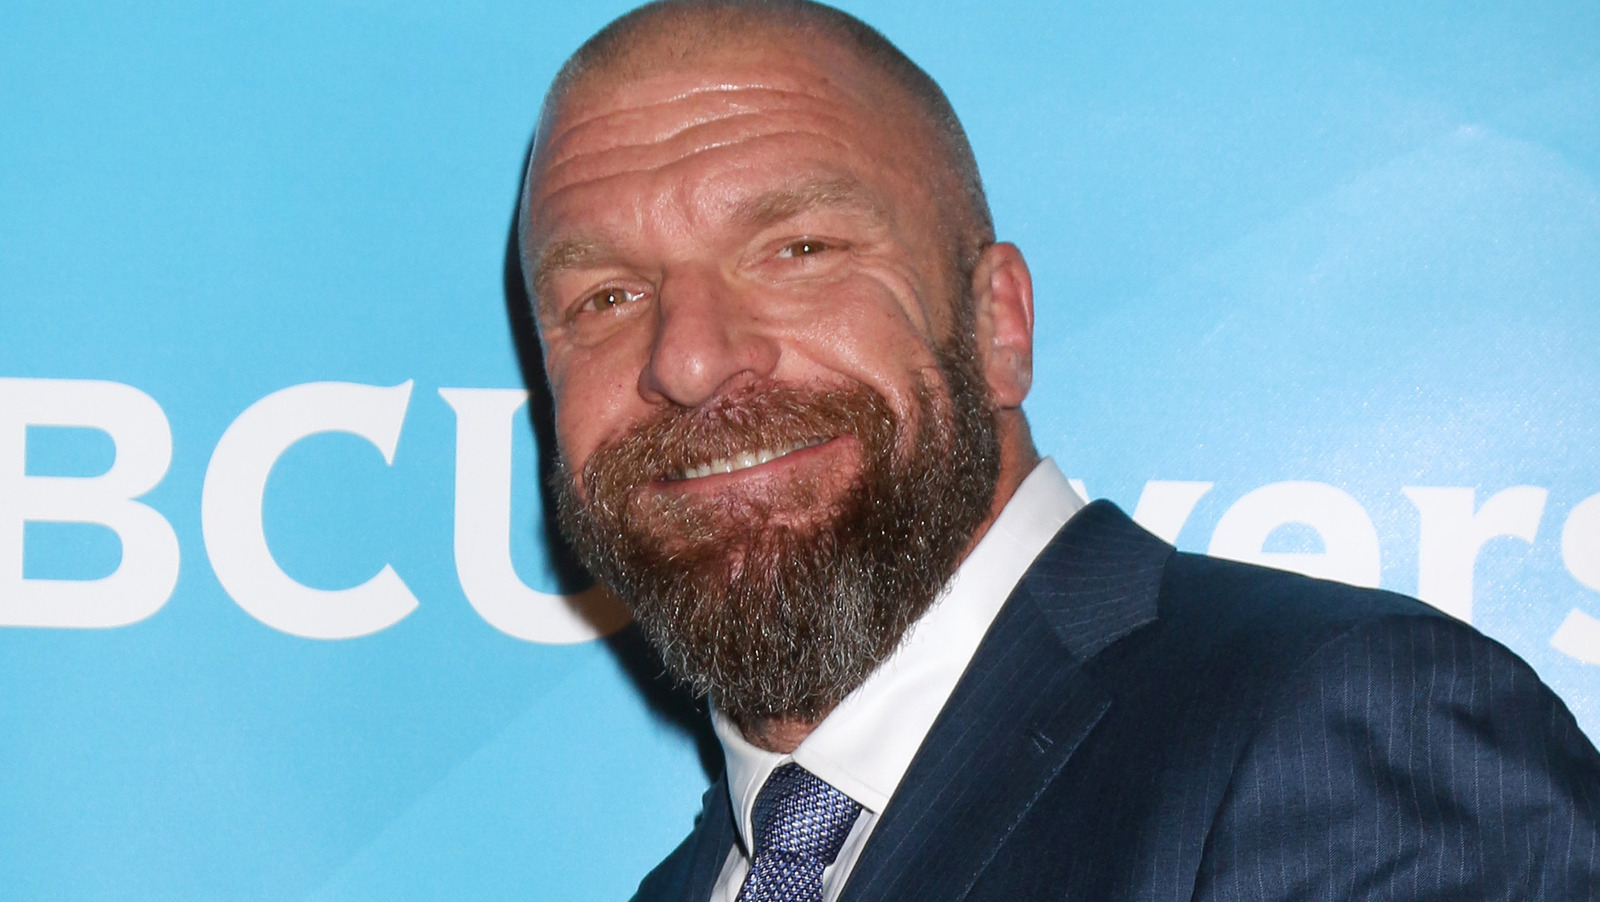 La decisión de ofrecer un segundo Campeonato Mundial WWE vino de Triple H, no de Vince McMahon